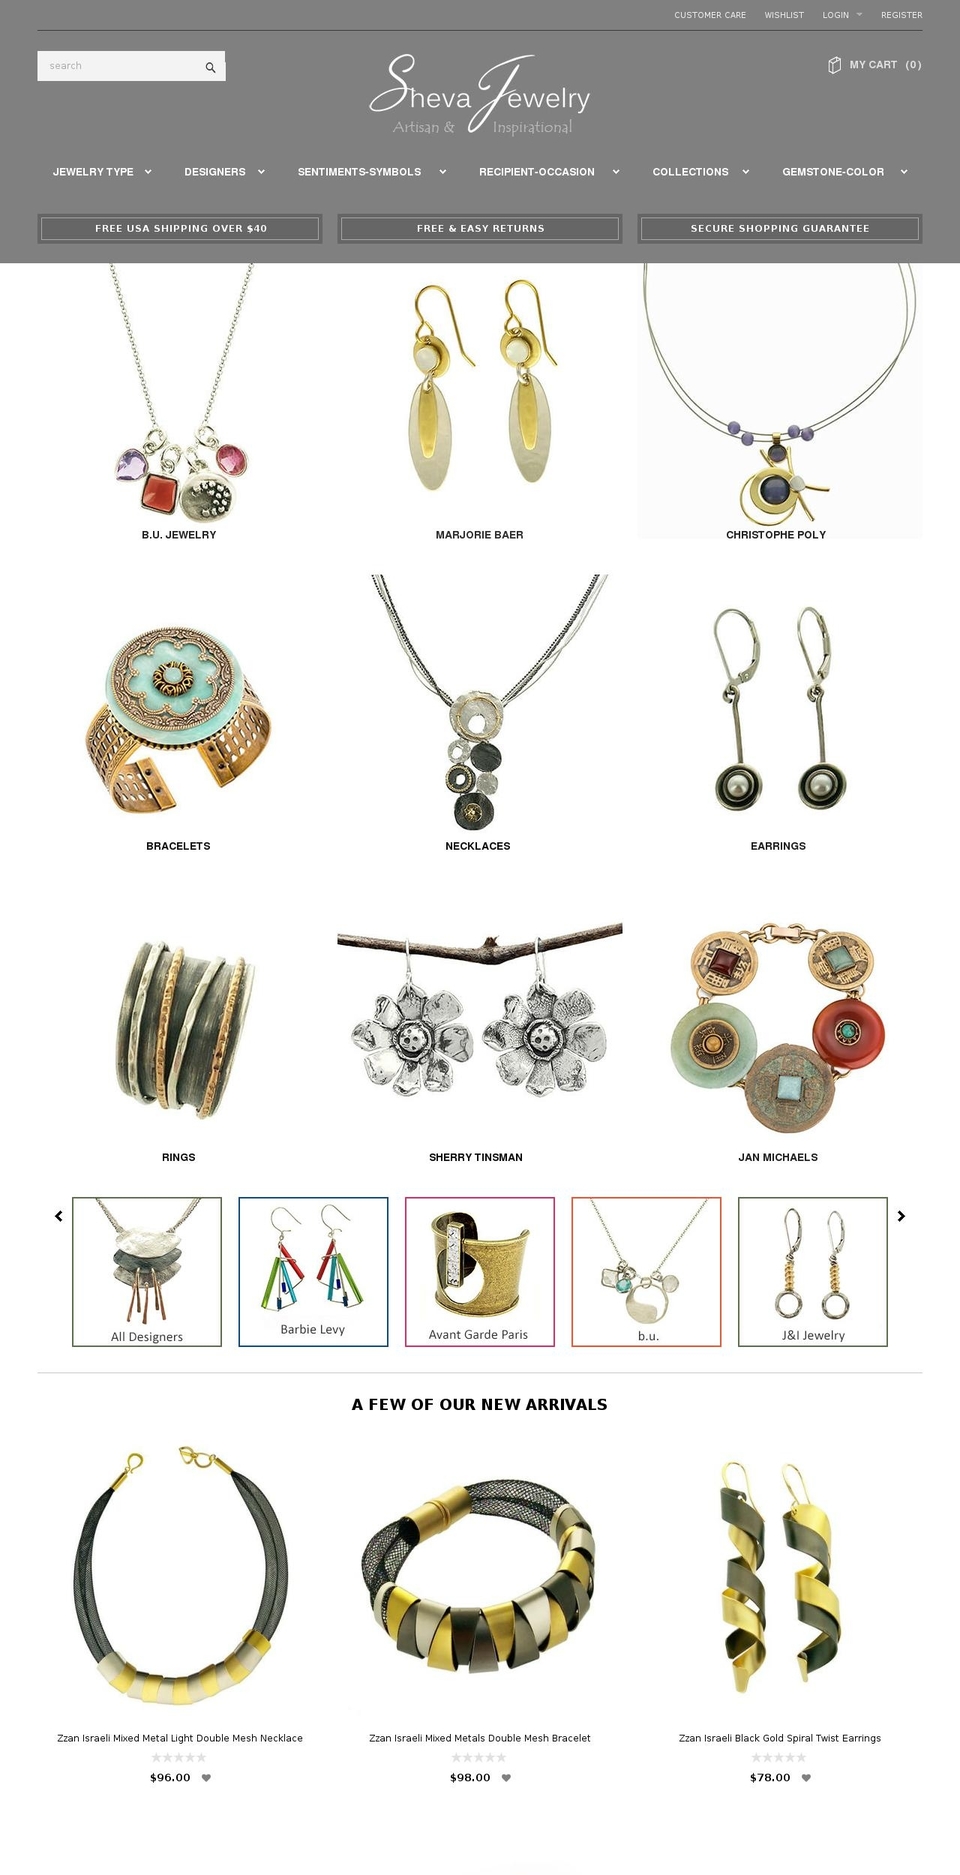 shevajewelry.com shopify website screenshot